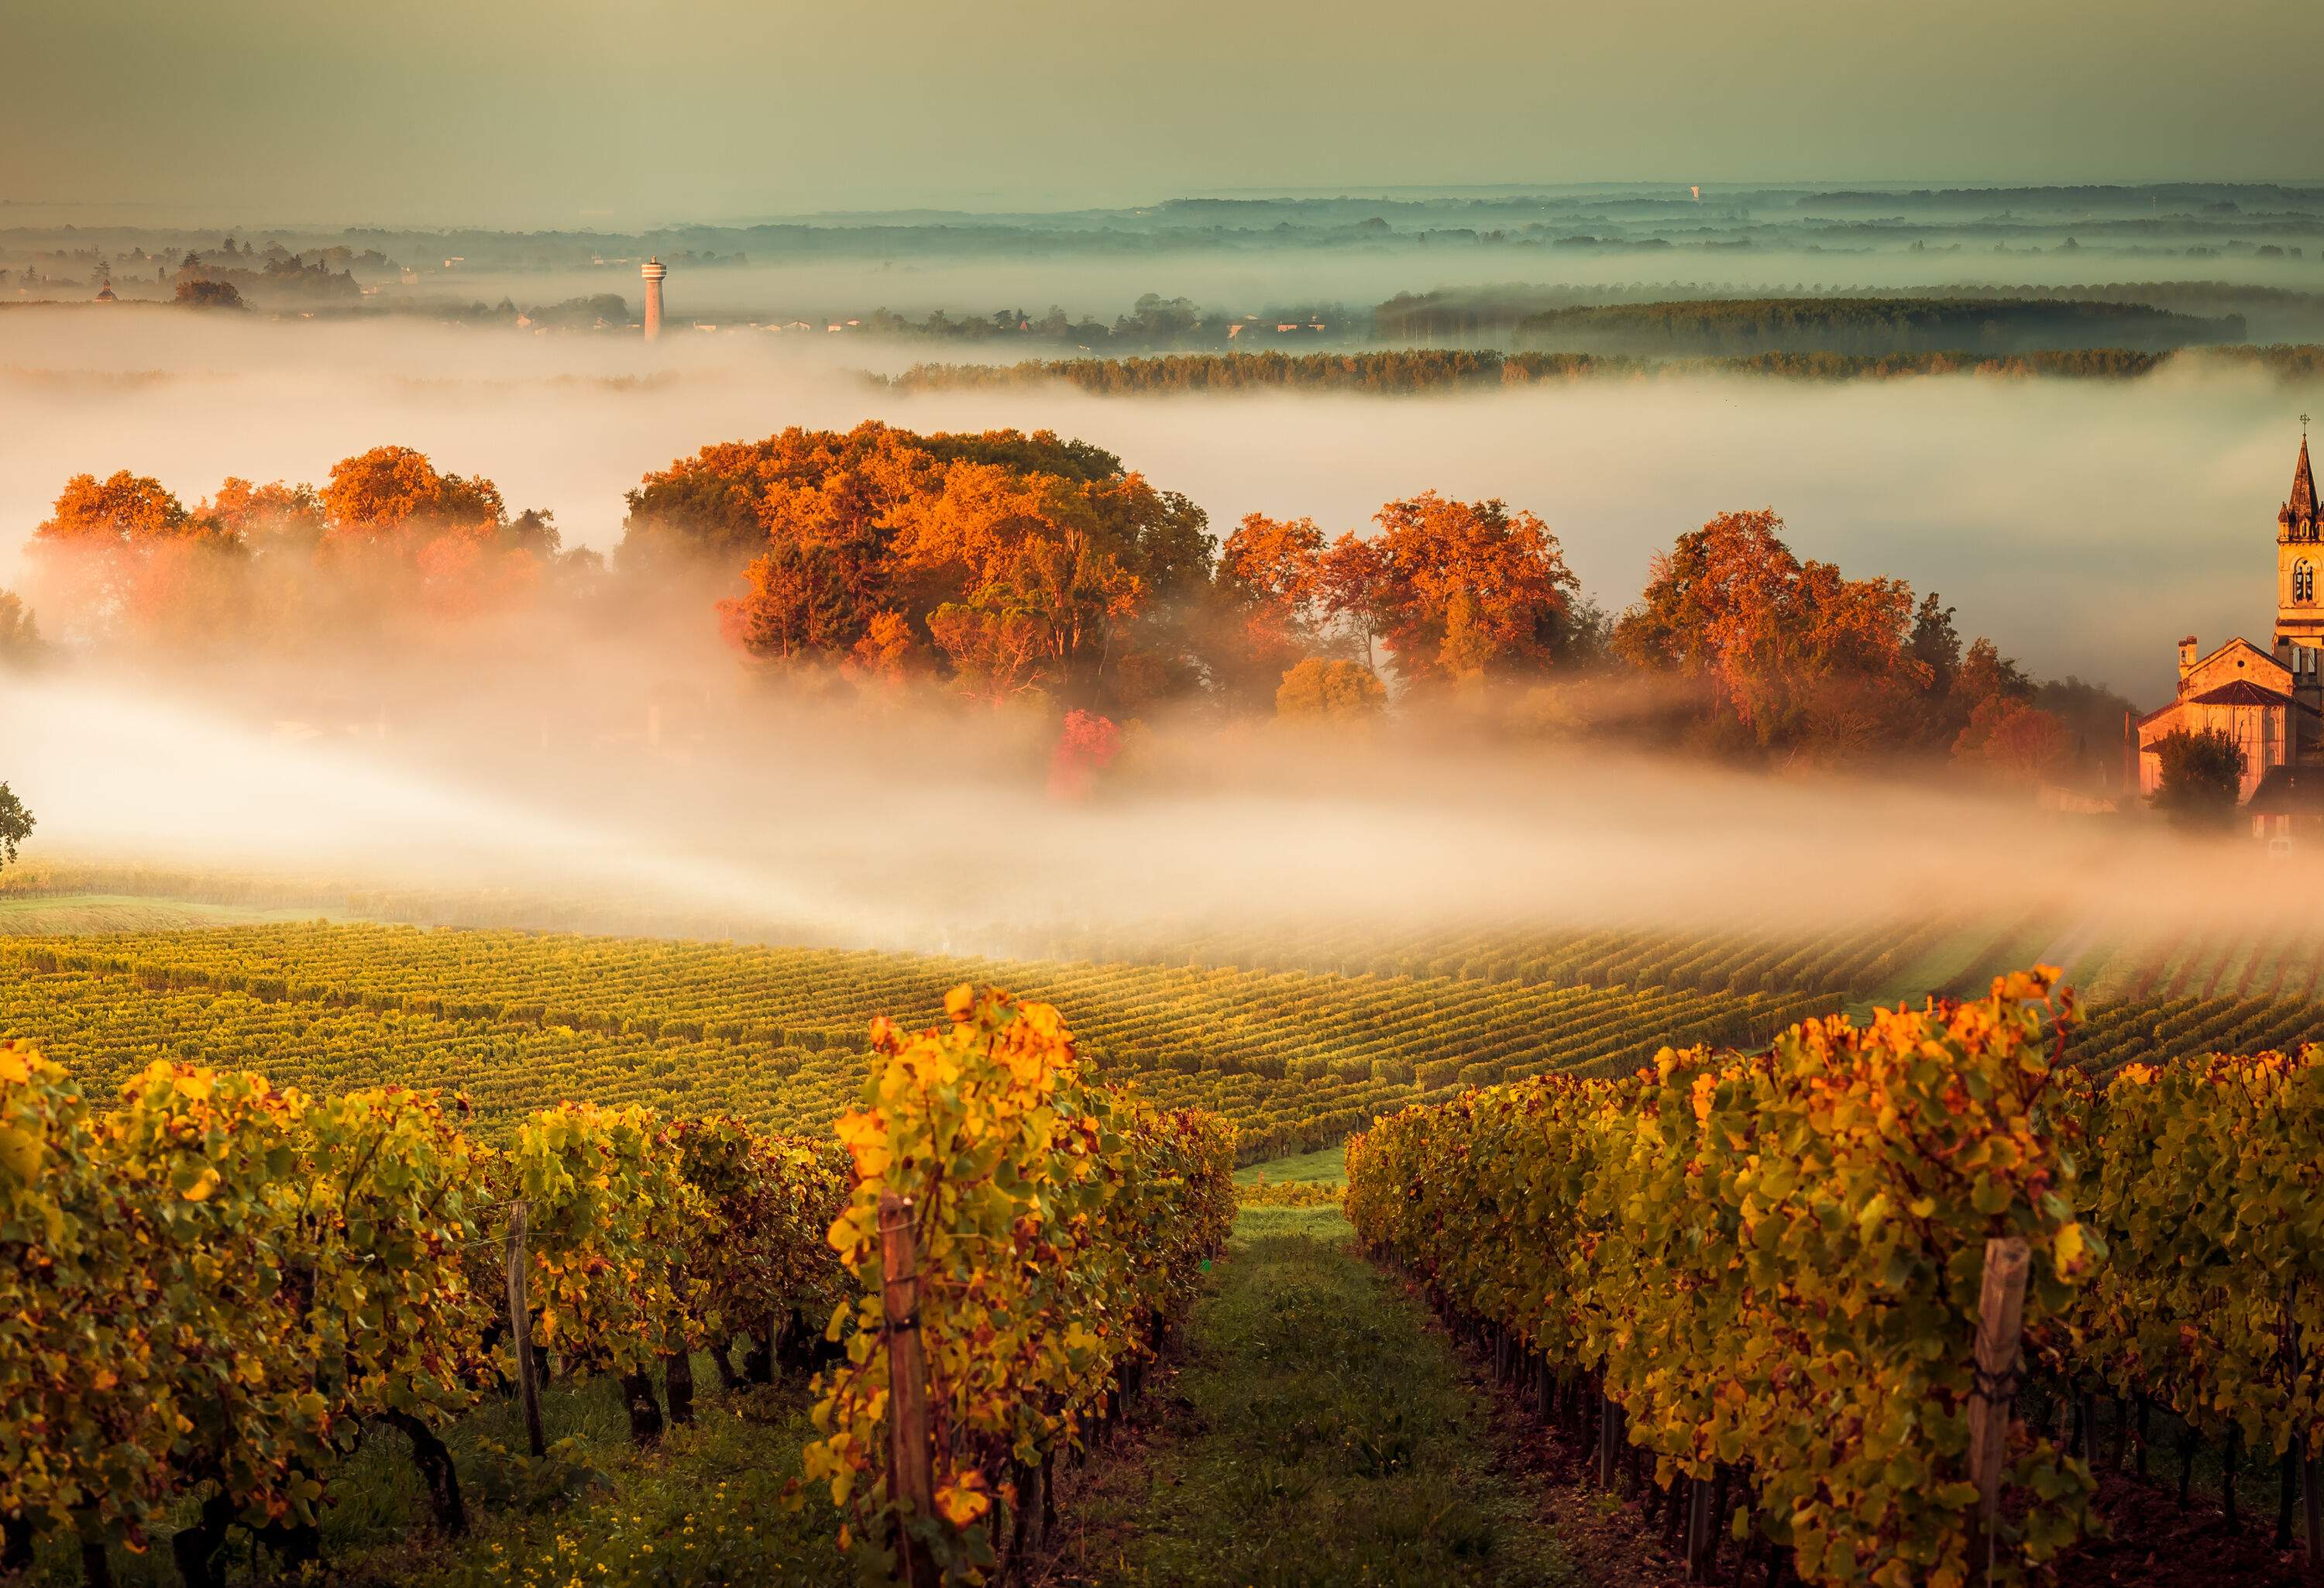 A vineyard shrouded by a veil of fog at dusk.